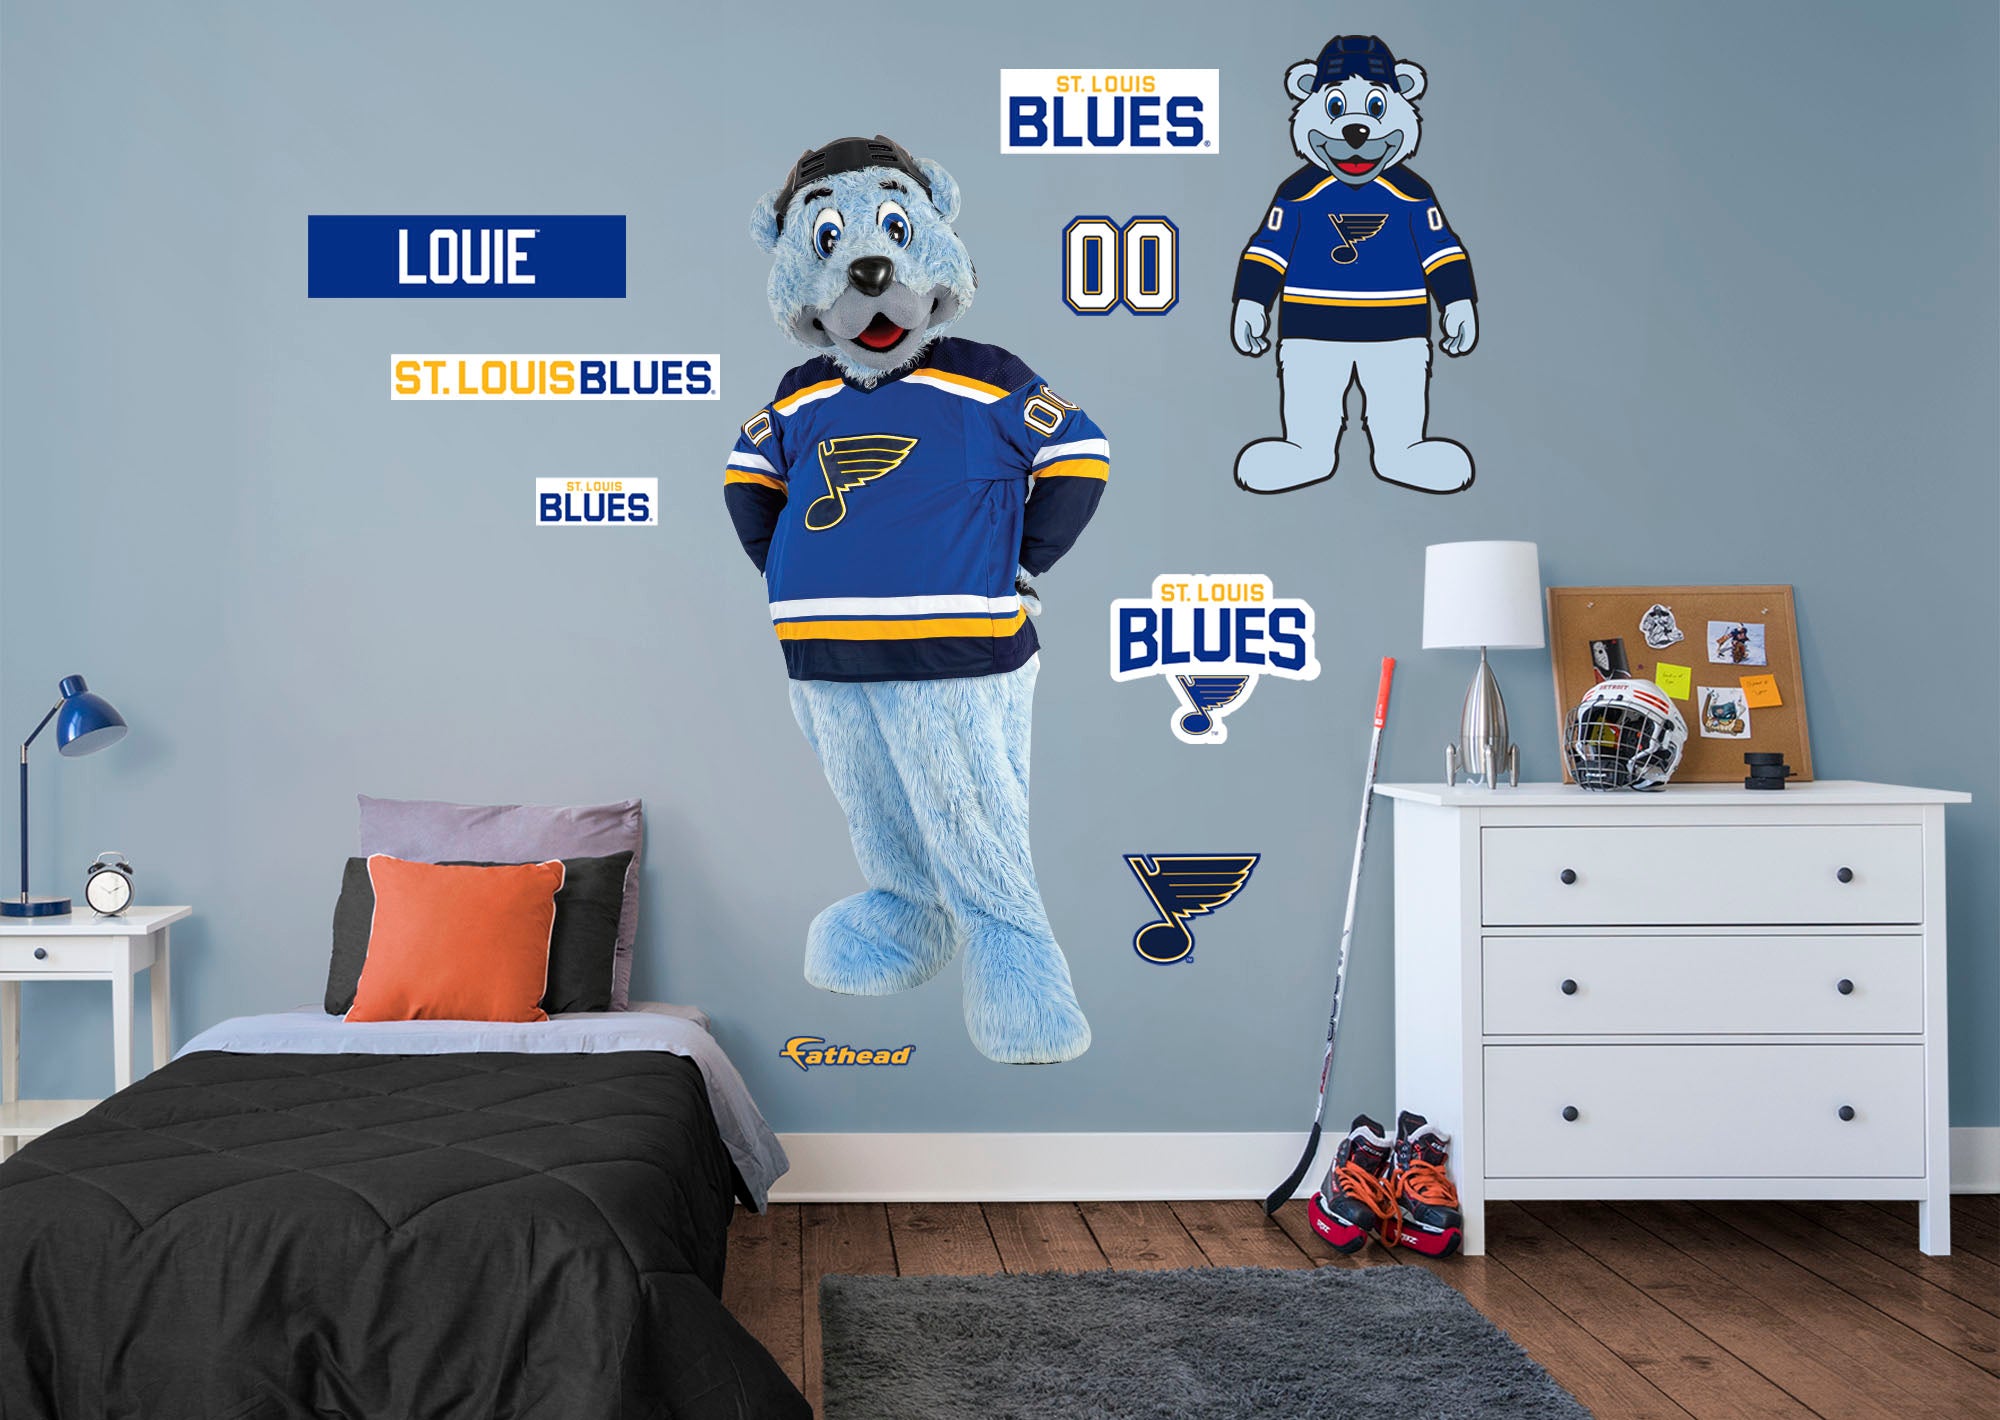 Louie - St. Louis Blues Mascot - Fun 4 STL Kids